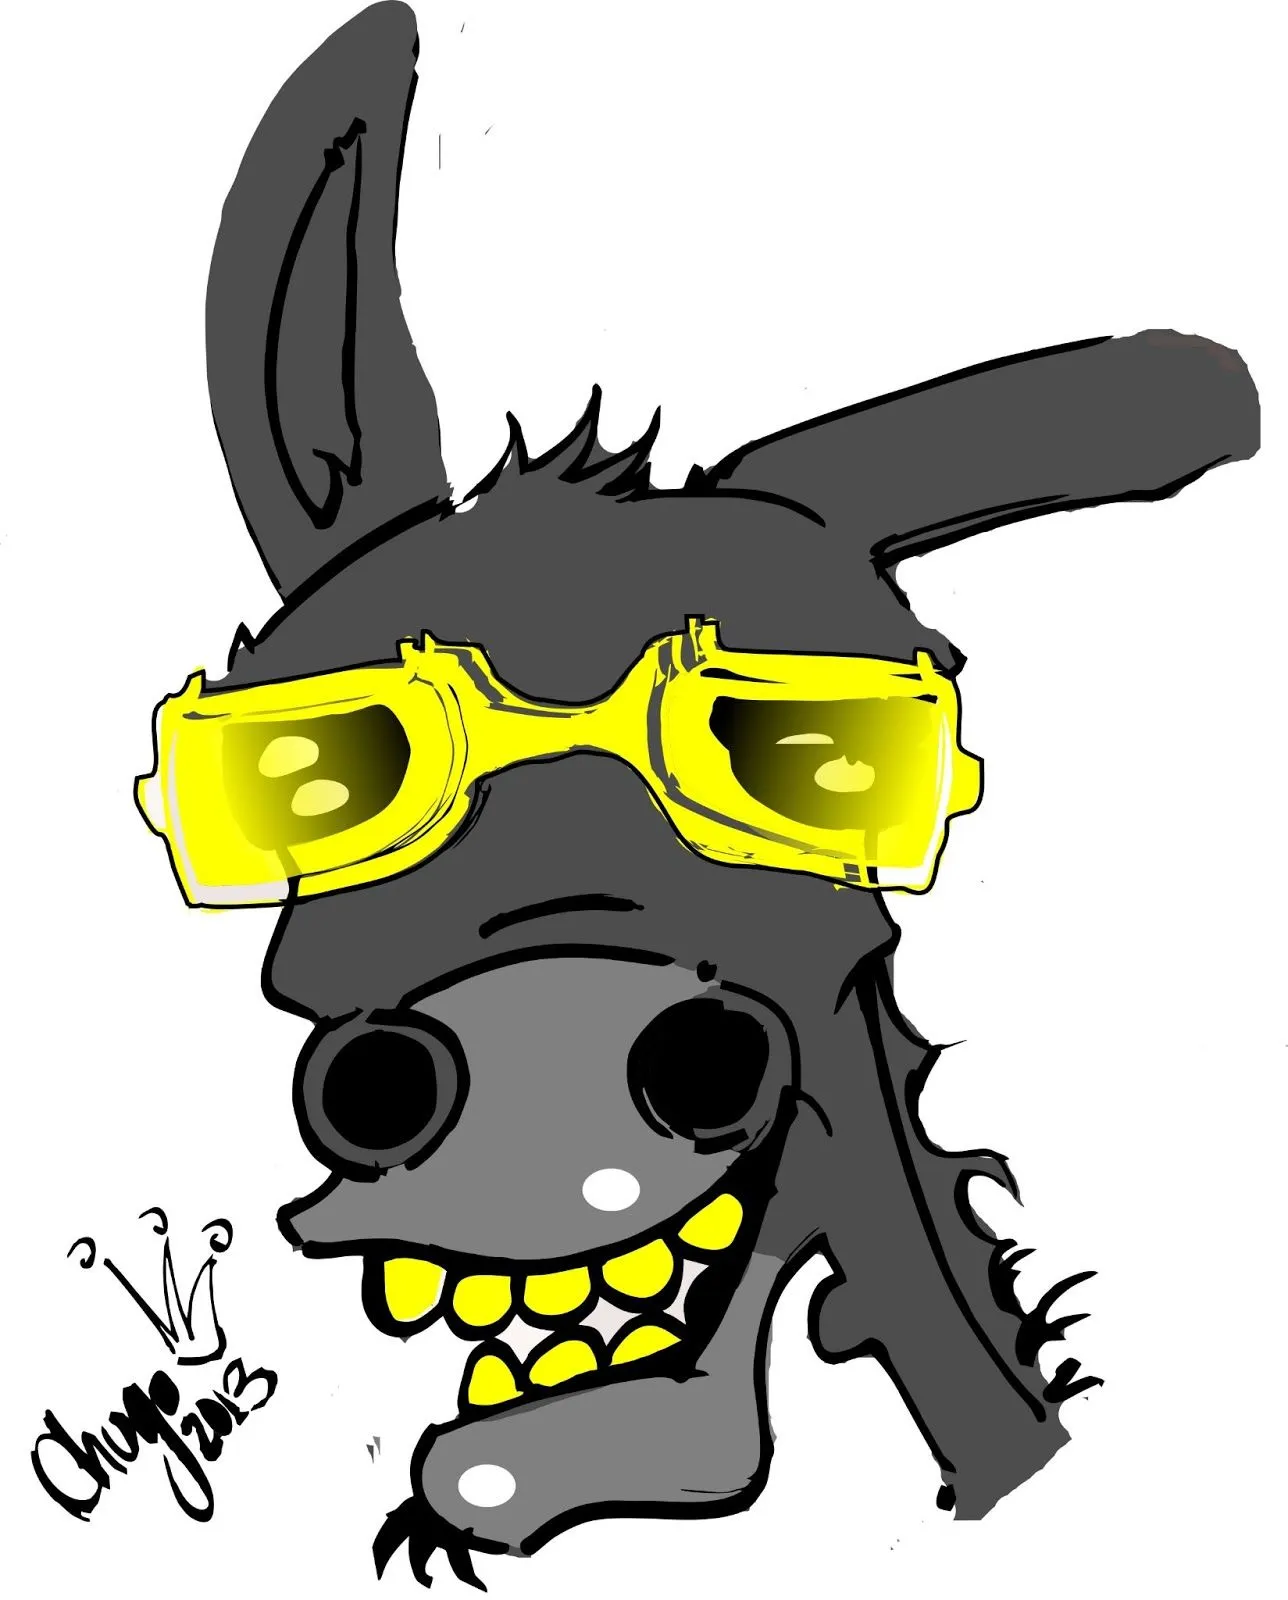 Caricaturas de burros - Imagui